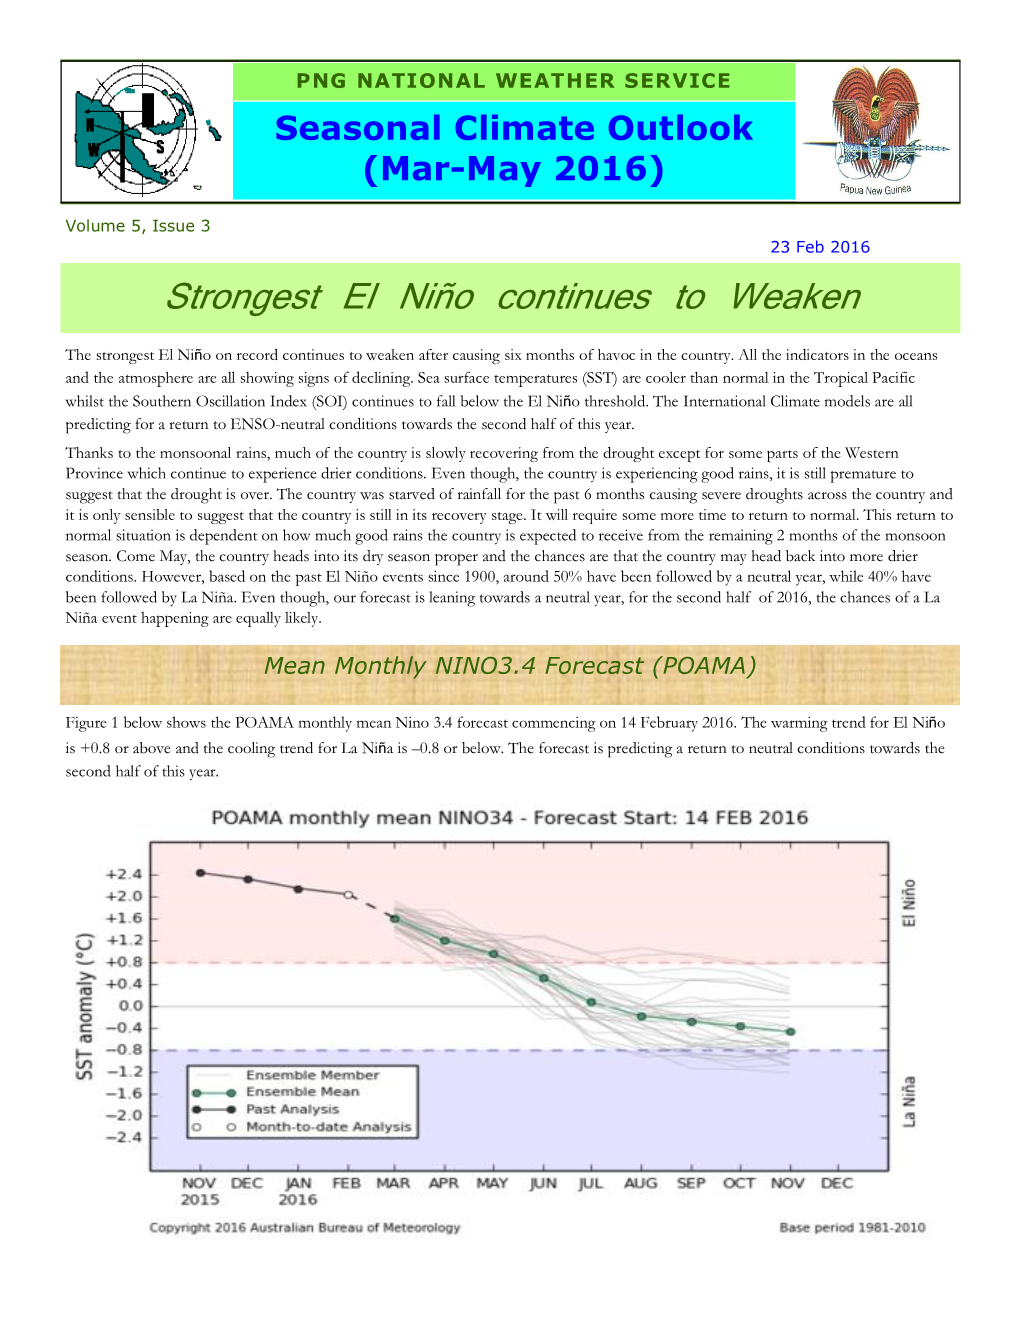 Seasonal Climate Outlook (Mar-May 2016)